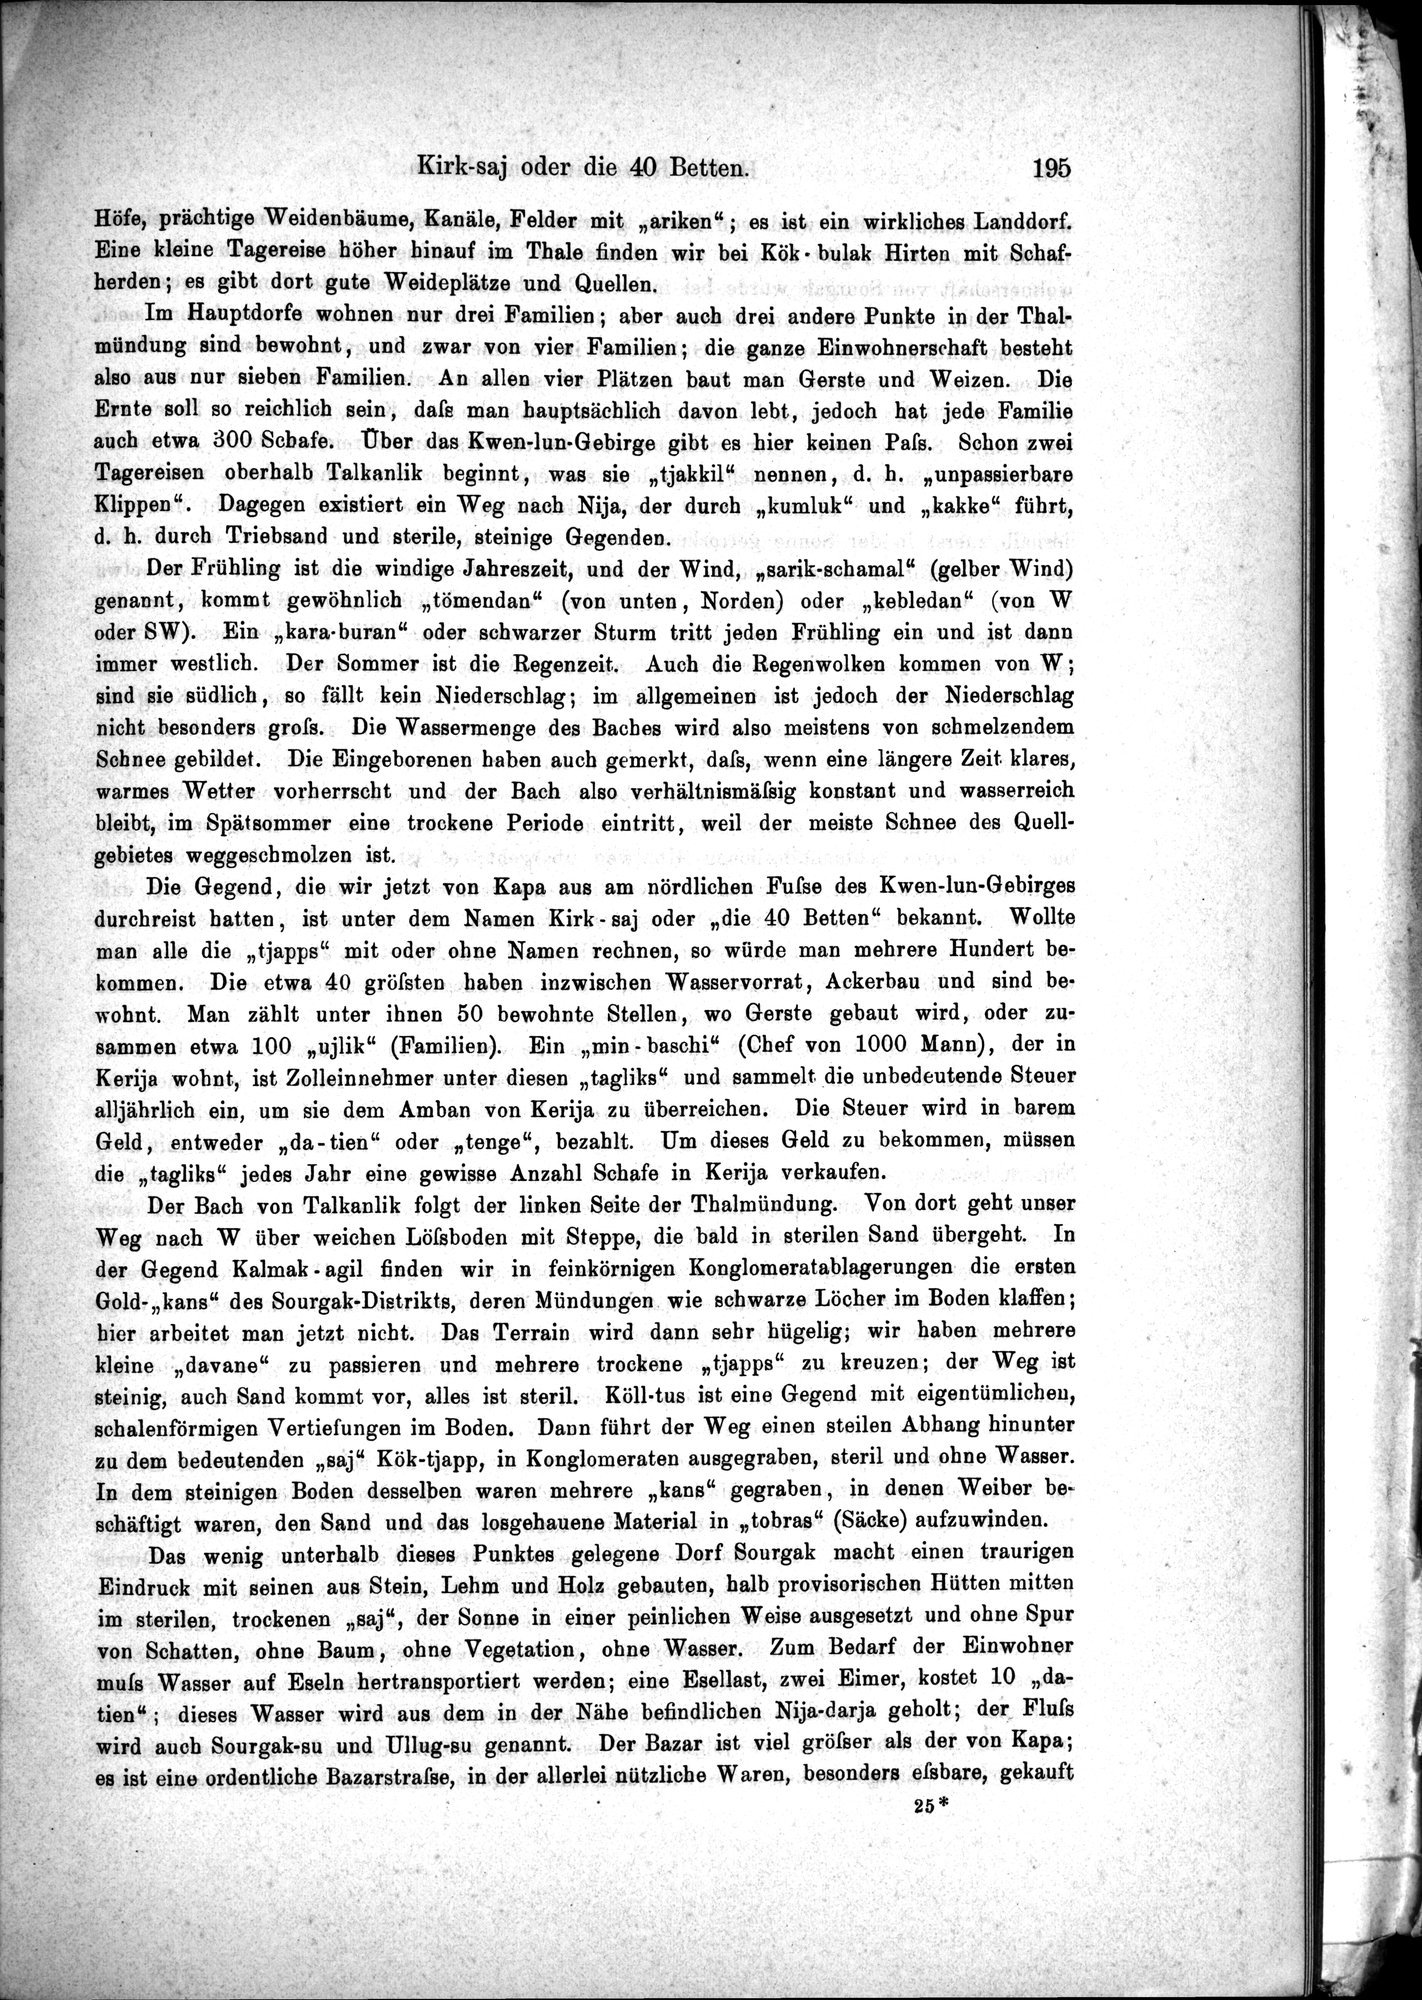 Die Geographische-Wissenschaftlichen Ergebnisse meiner Reisen in Zentralasien, 1894-1897 : vol.1 / Page 207 (Grayscale High Resolution Image)